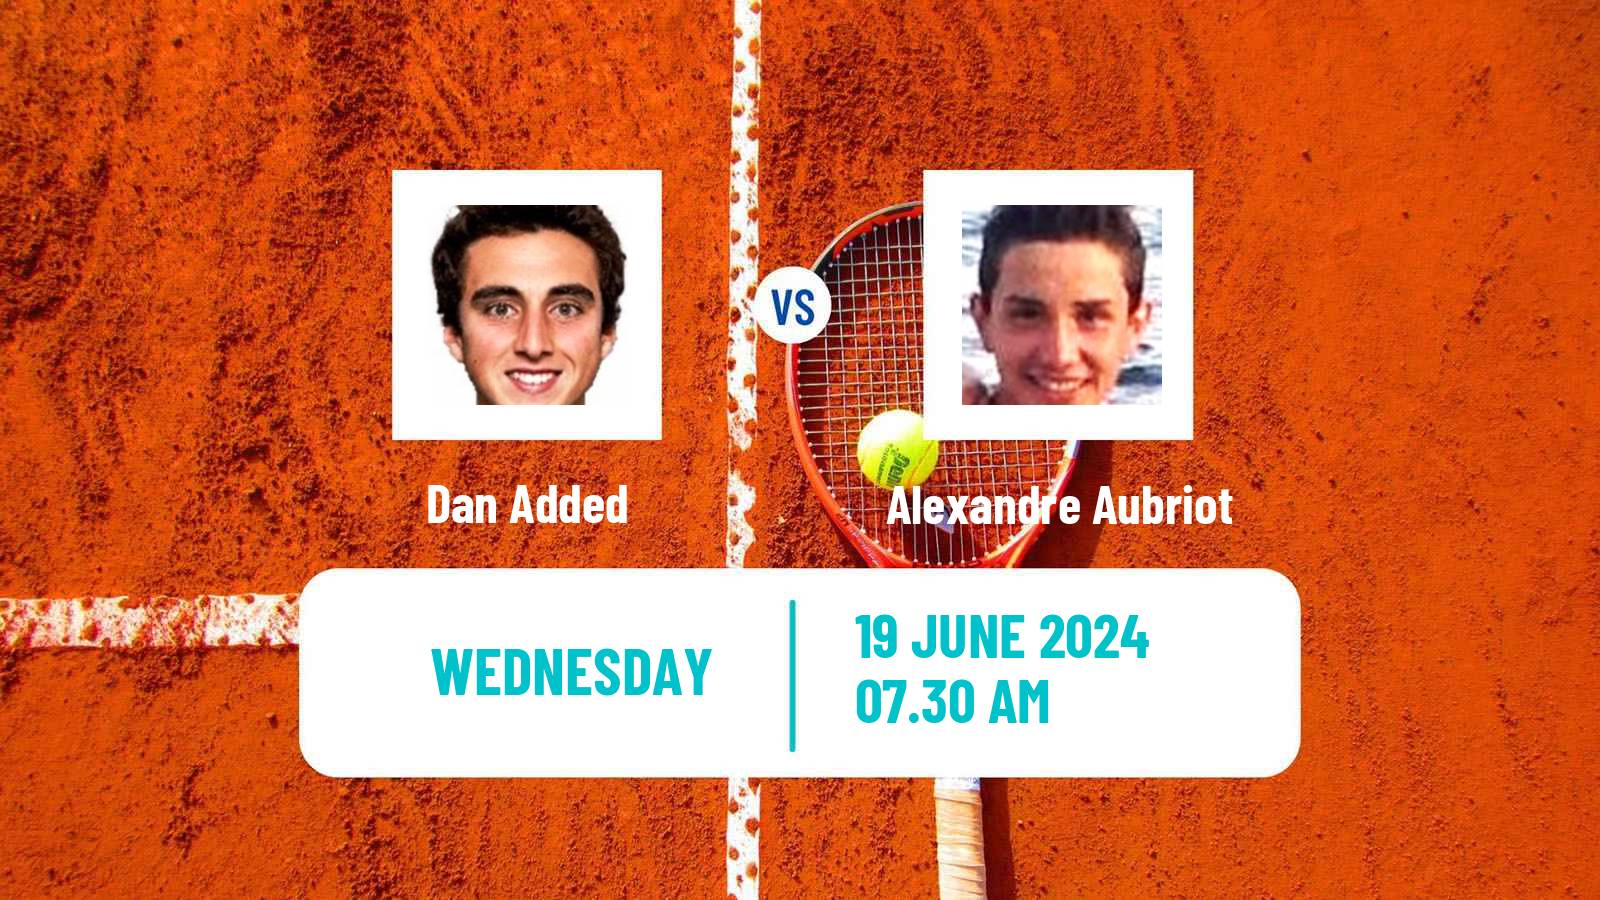 Tennis ITF M25 Montauban Men Dan Added - Alexandre Aubriot